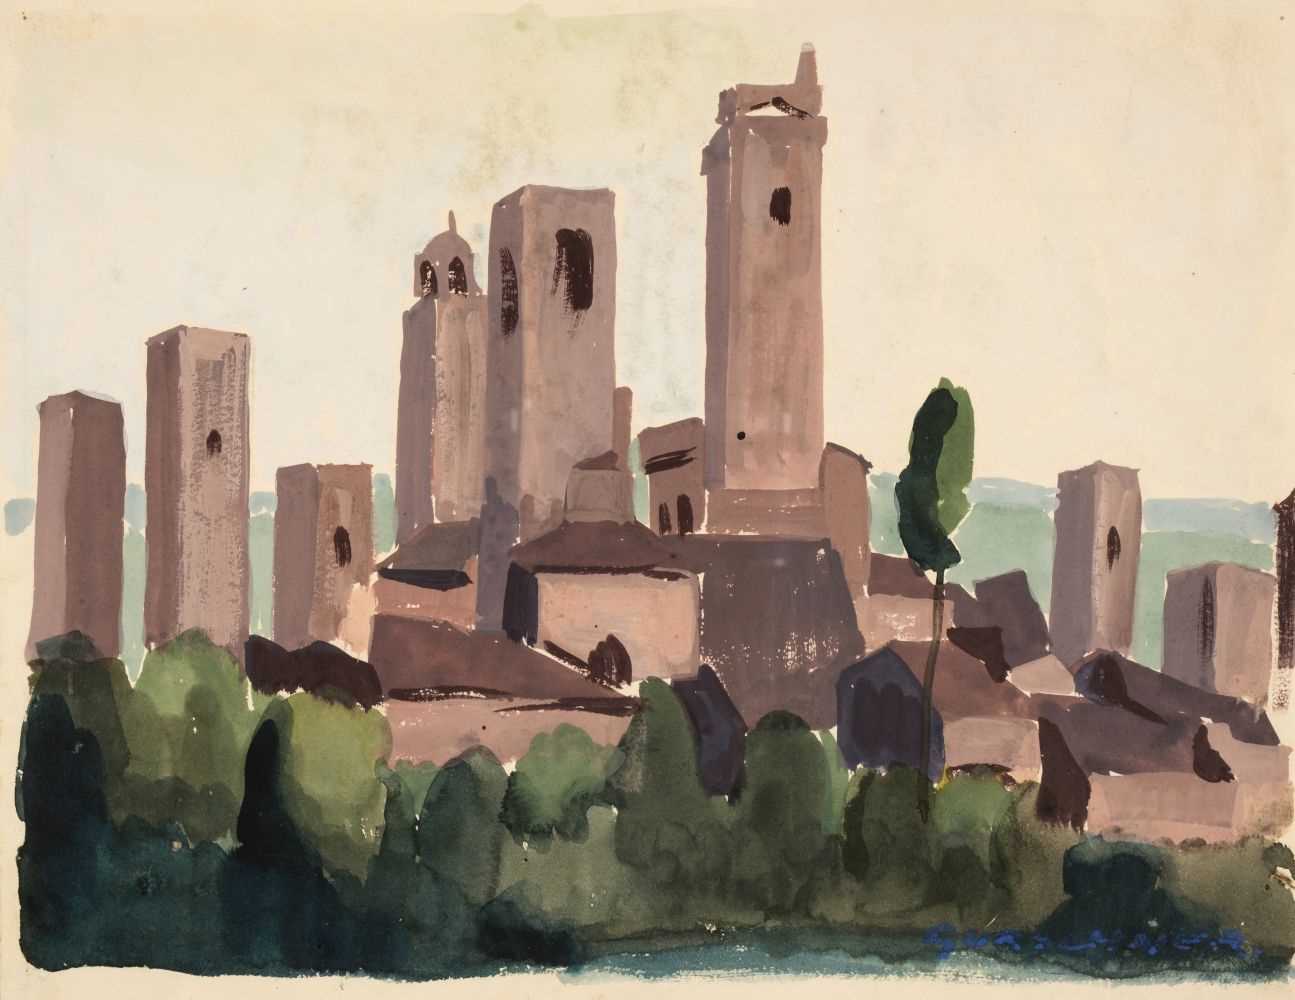 Lot 192 - Gurschner (Herbert, 1901-1975). St Gimignano, circa 1925